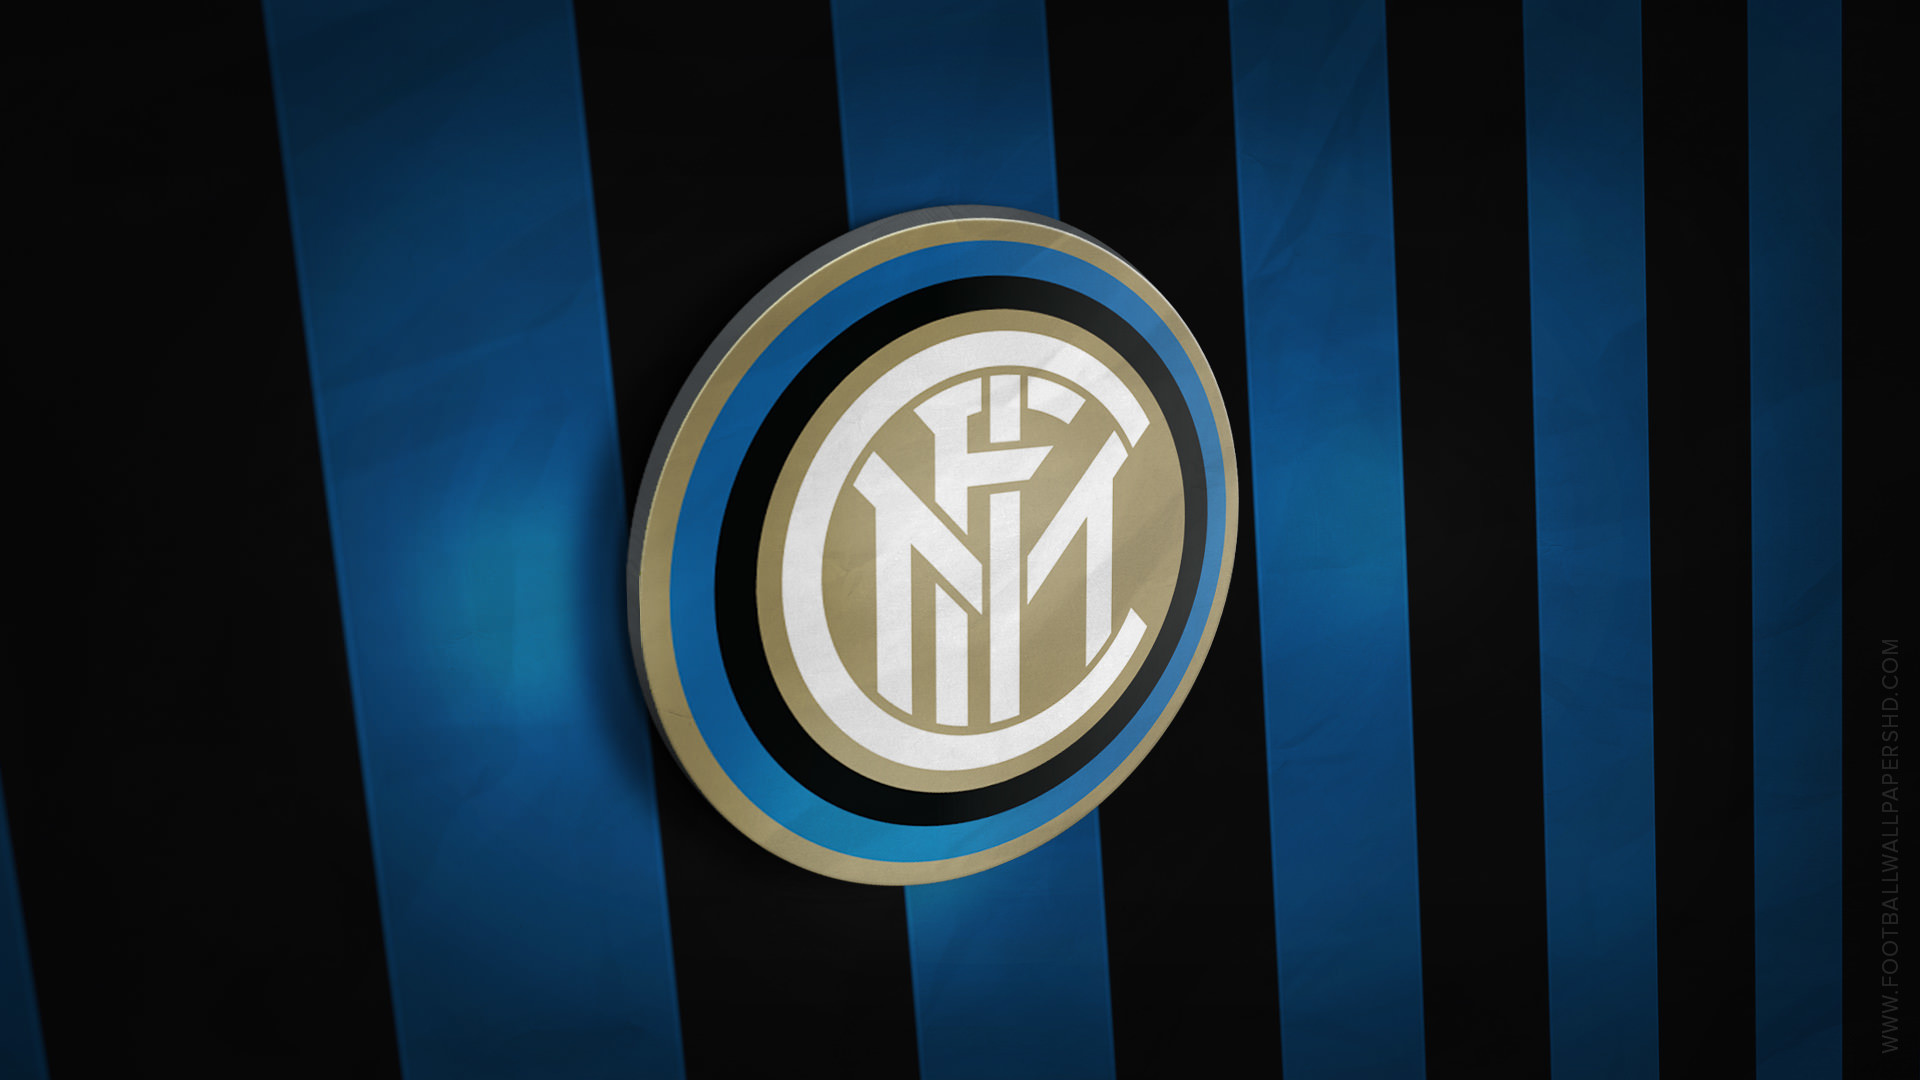 1920x1080 Inter Milan 3D Logo Wallpaper | Football Wallpapers HD | Pinterest